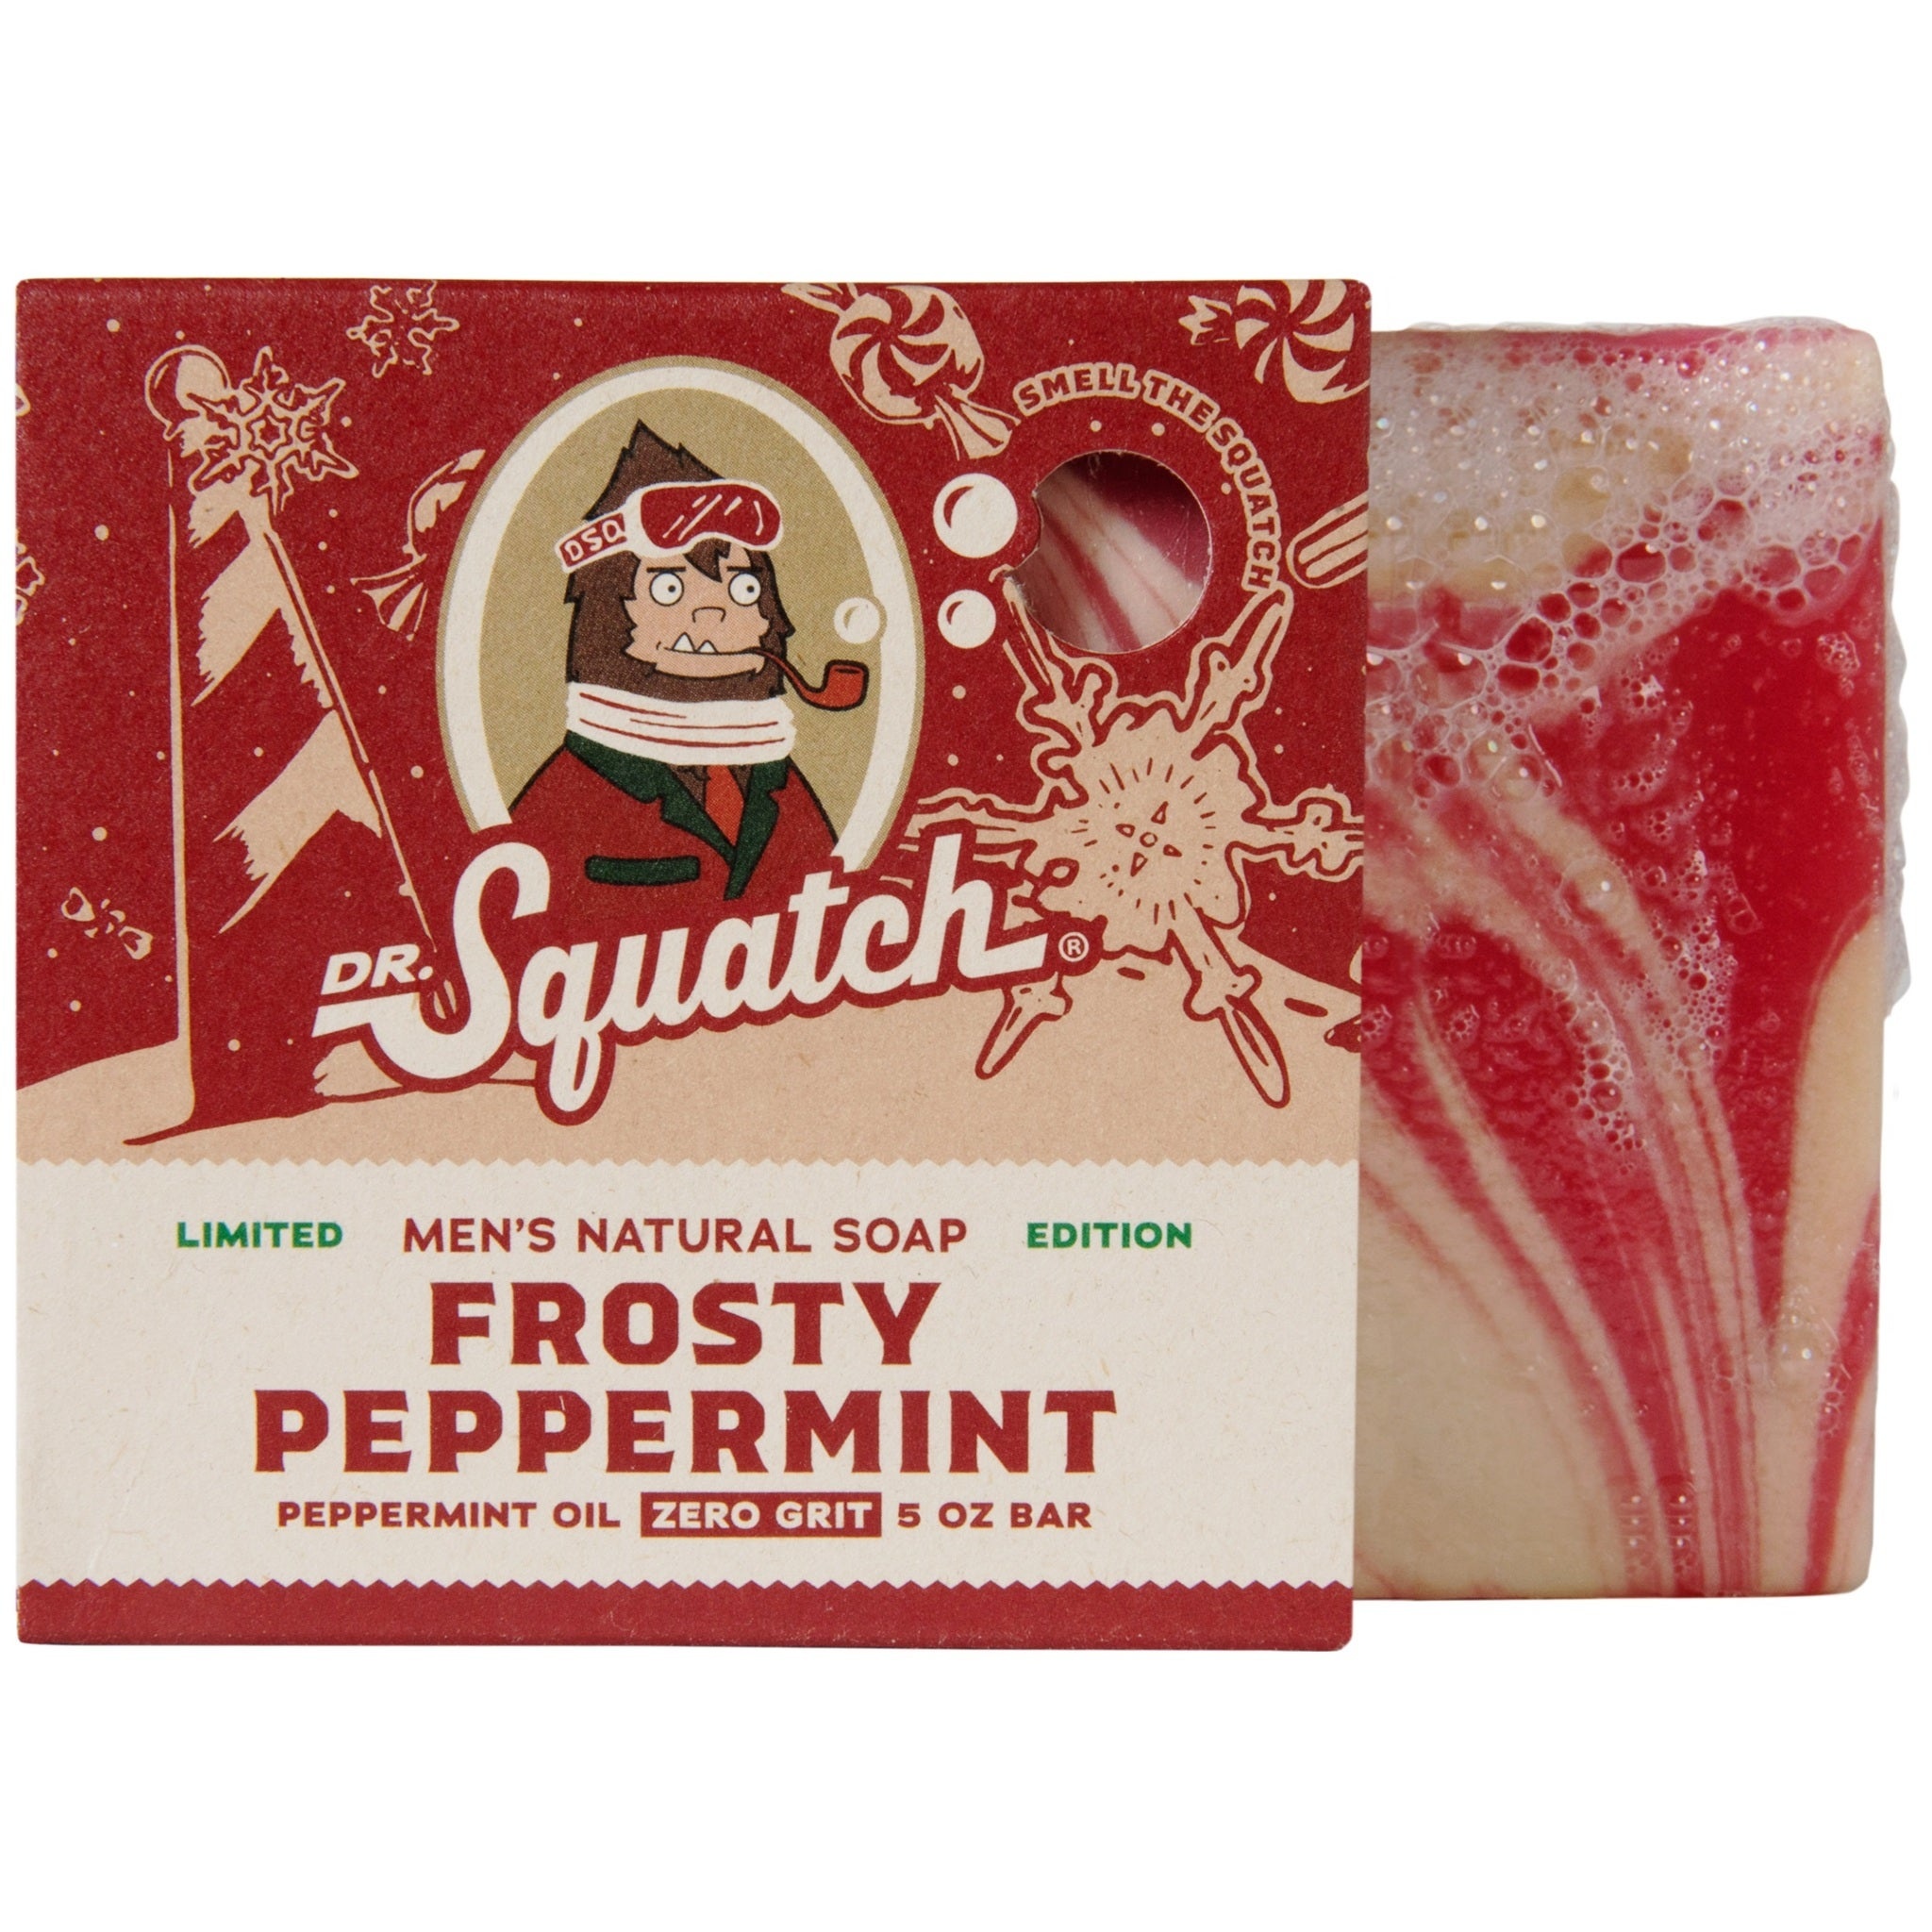 https://cdn.shoplightspeed.com/shops/621427/files/50235810/dr-squatch-dr-squatch-bar-soap-frosty-peppermint.jpg